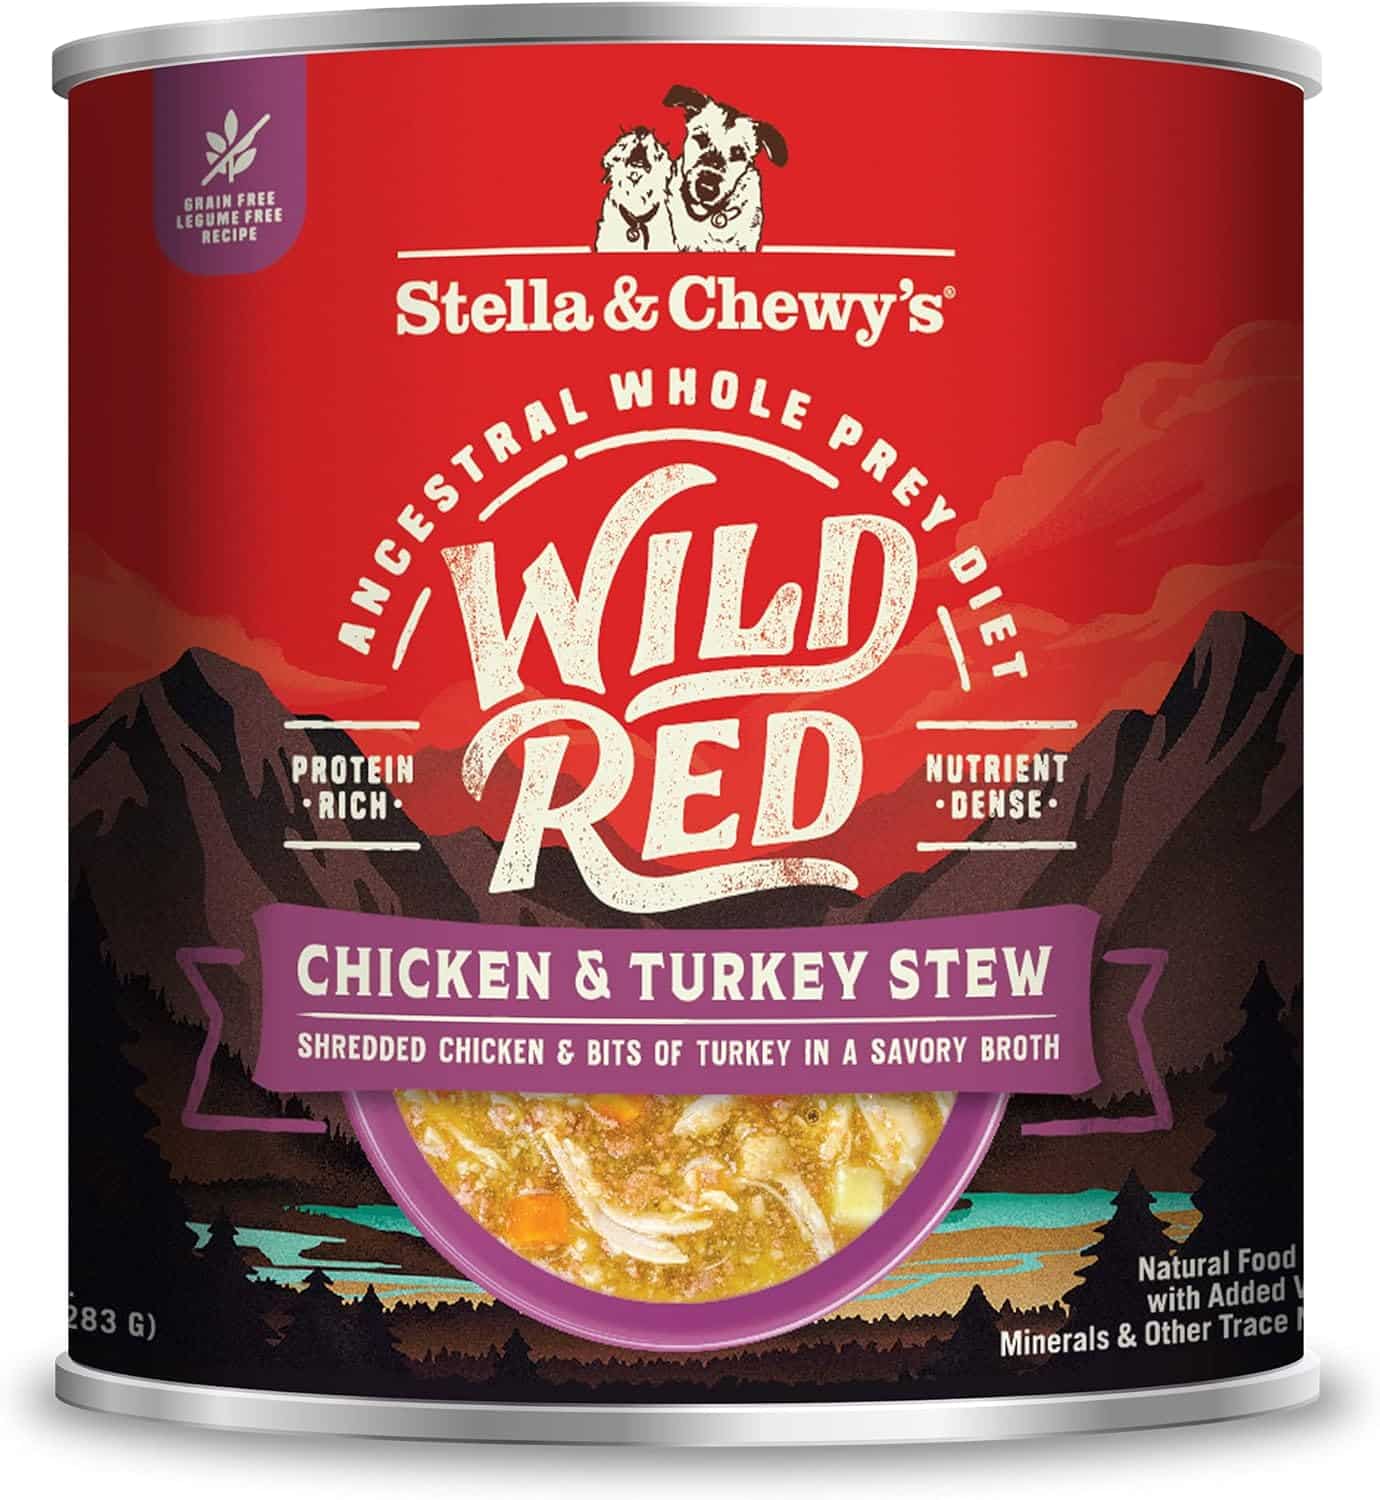 Stella & Chewy's chicken and turkey stew